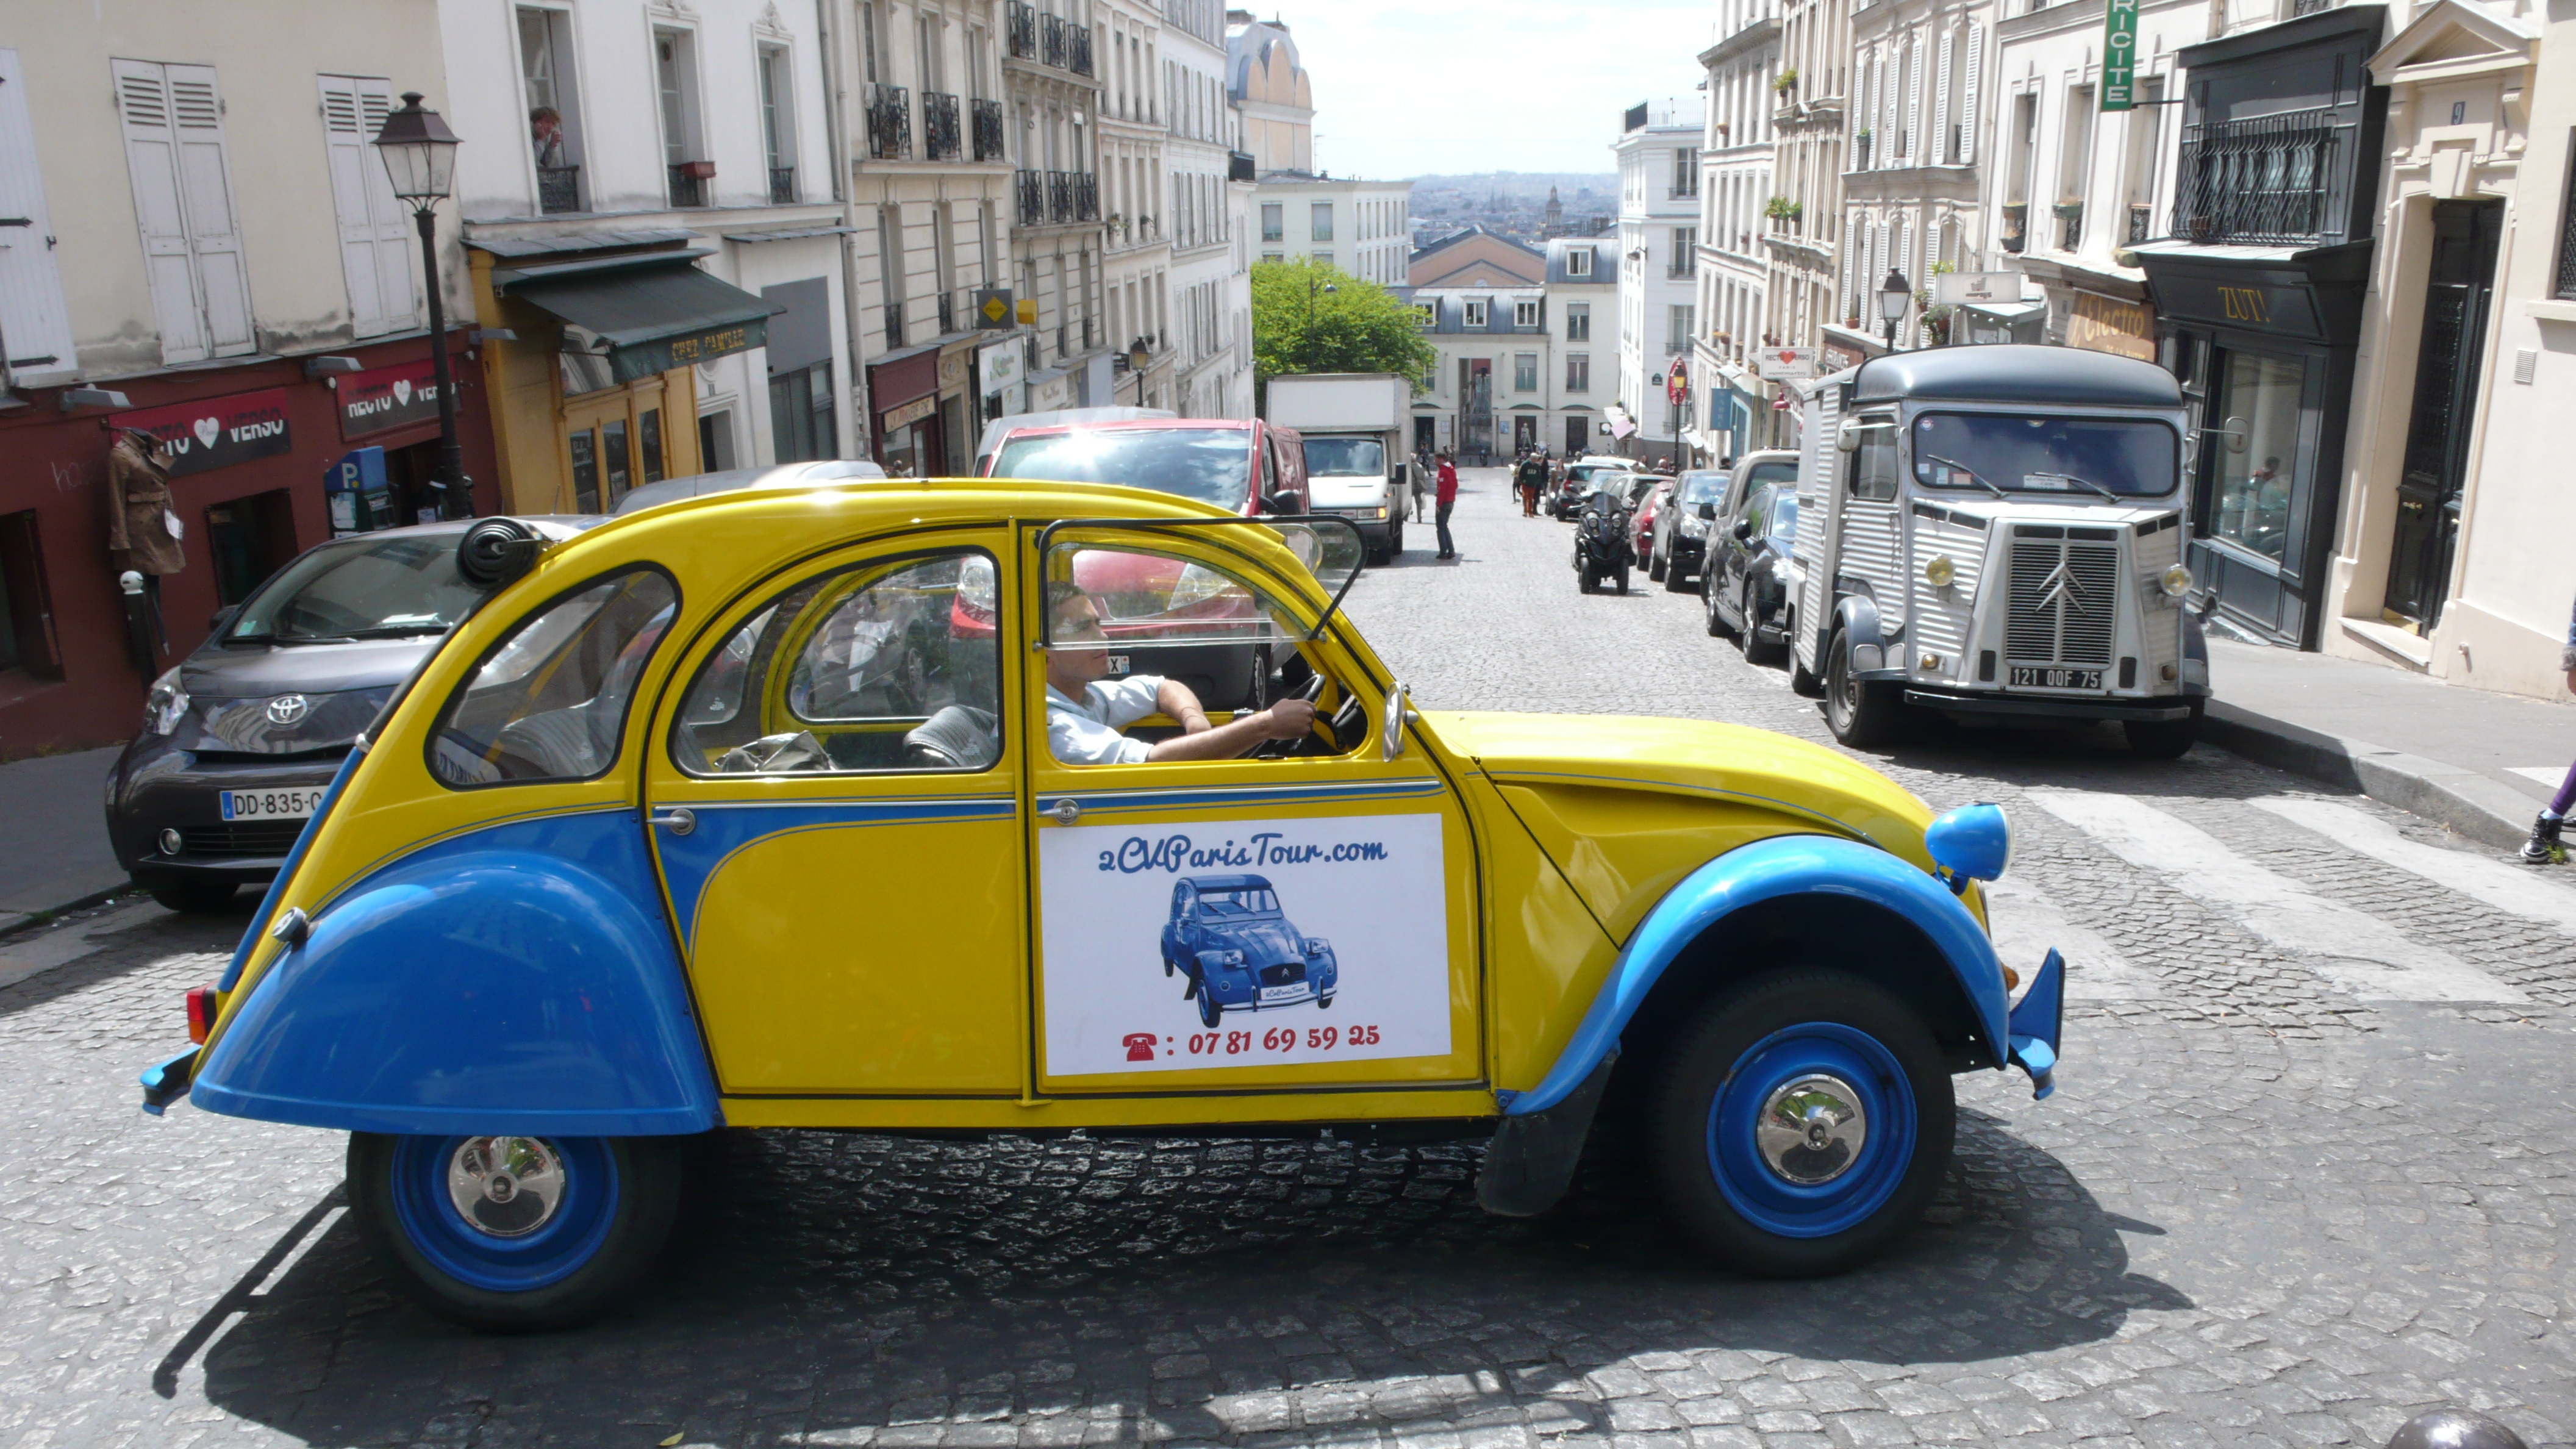 2CV Paris Tour - Visit Paris by 2CV! Heading to Rue des Abbesses